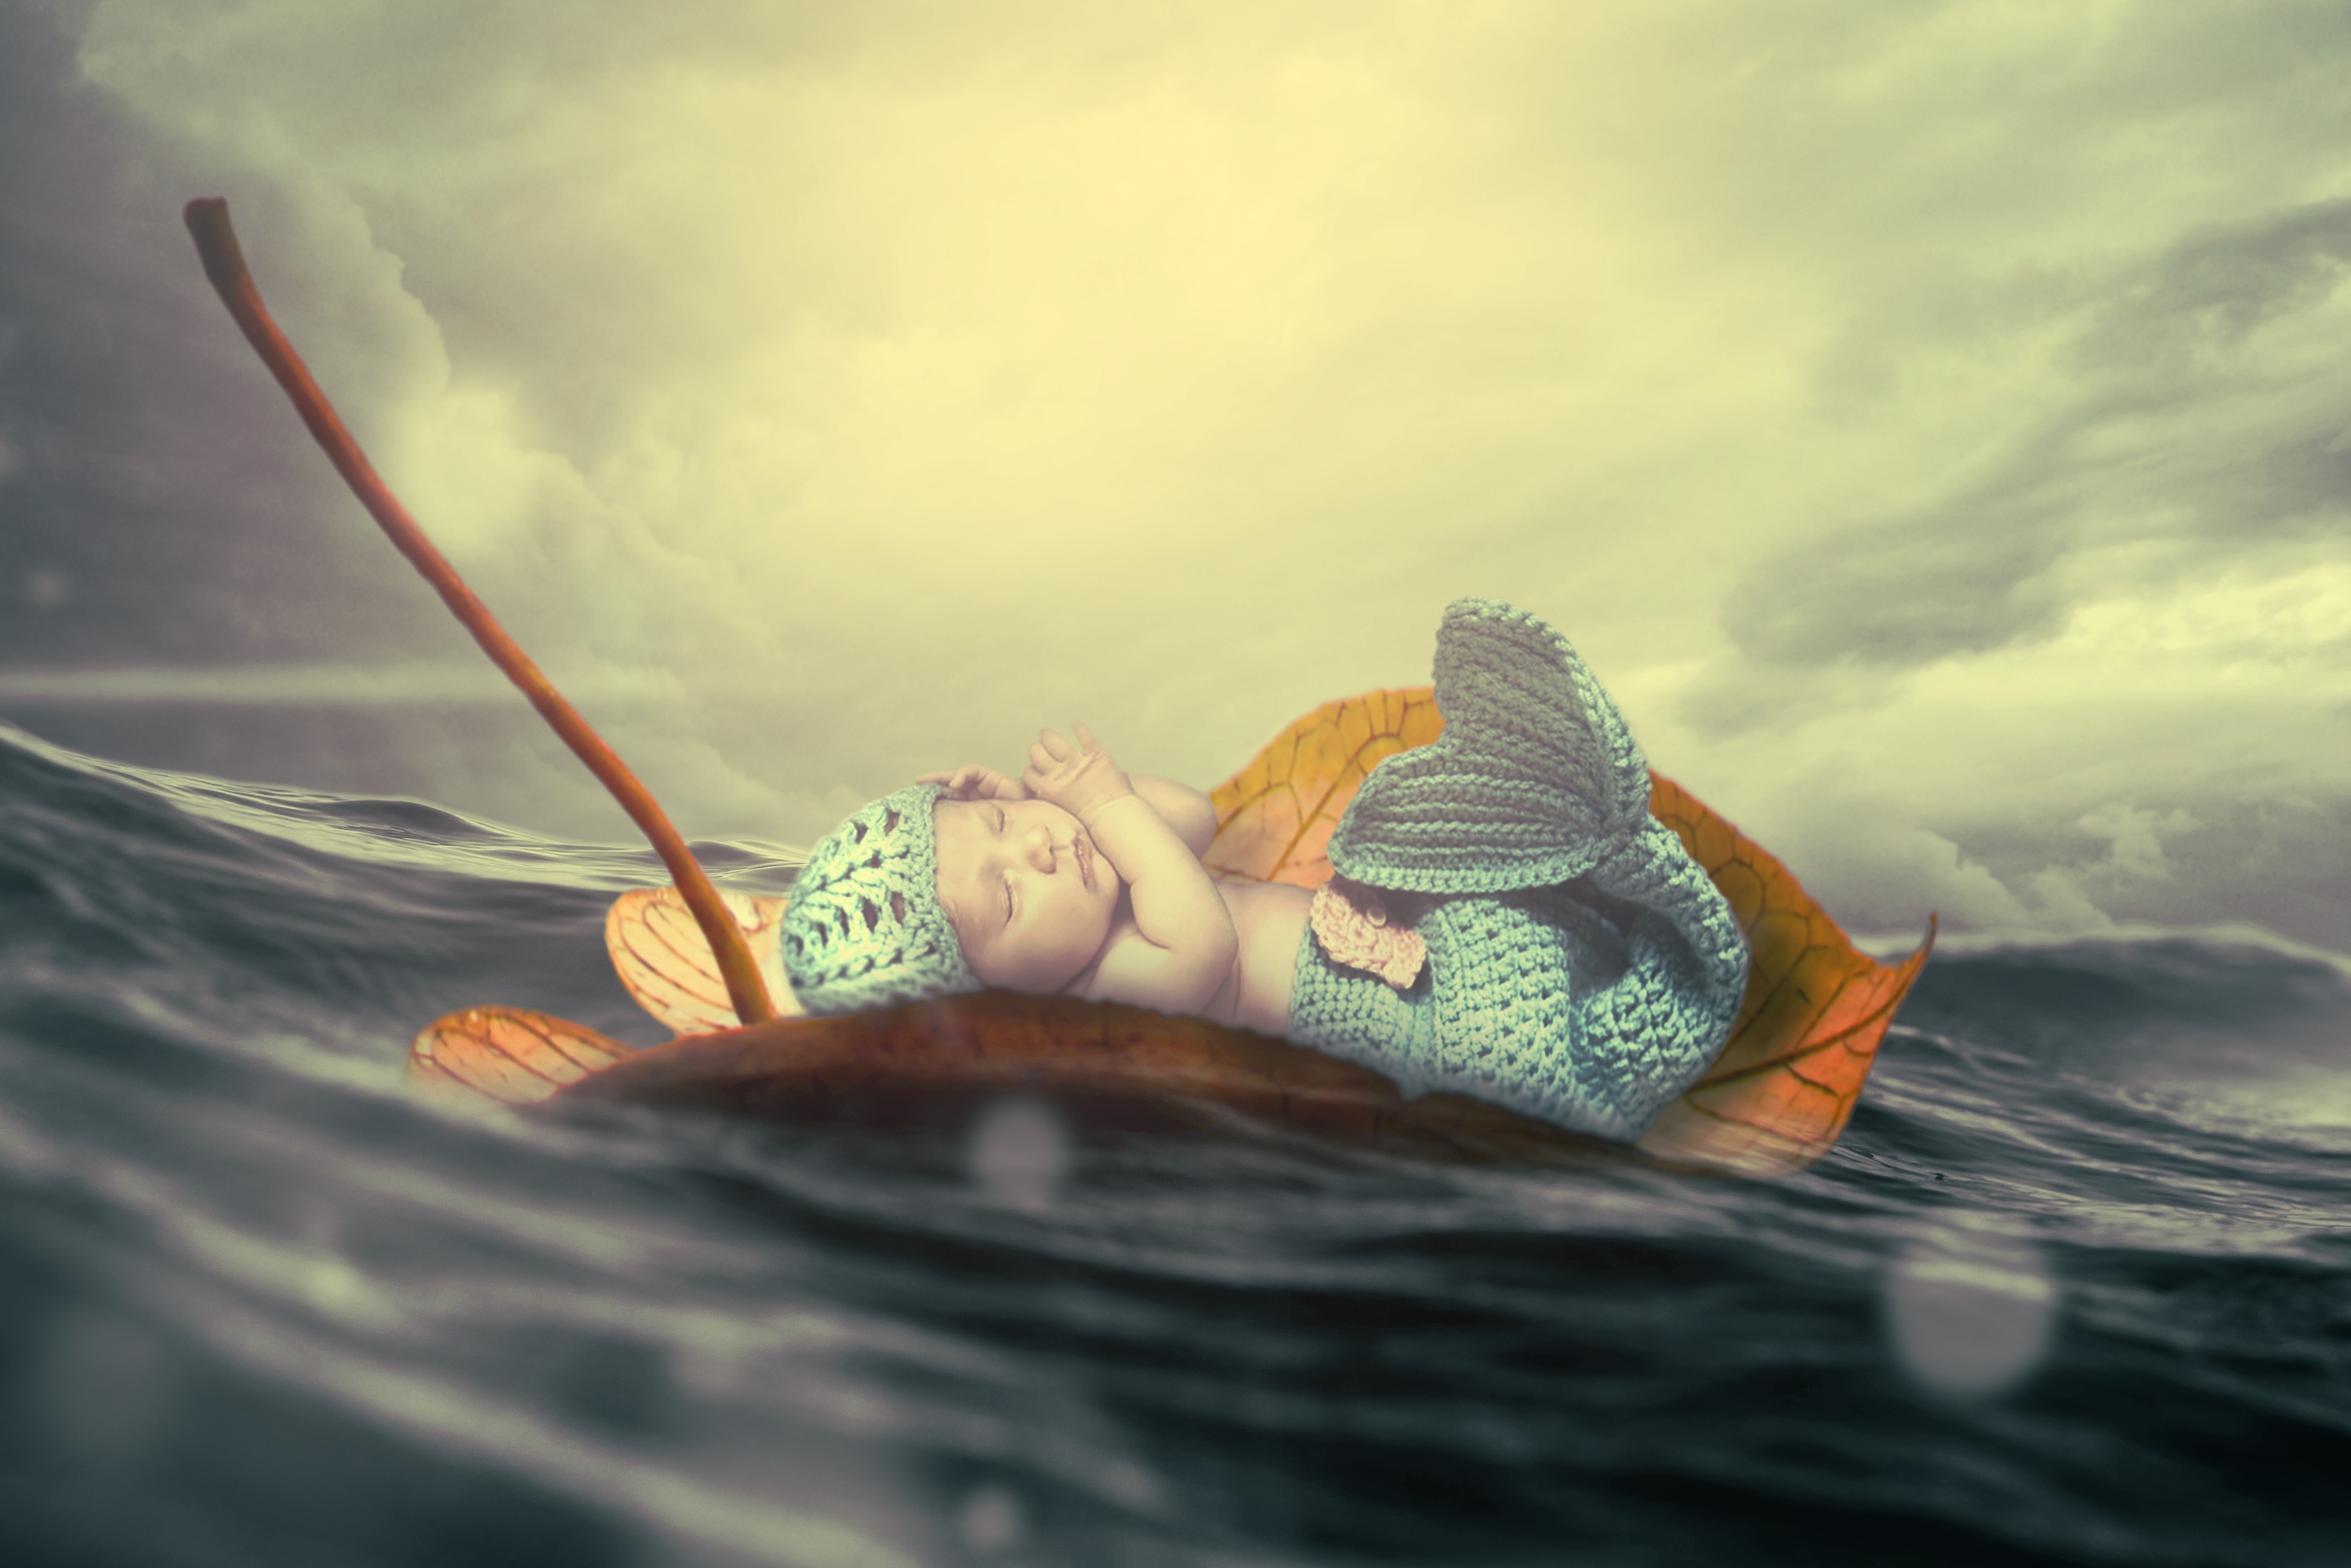 Baby Mermaid on a Leaf in the Ocean by Jonny Lindner